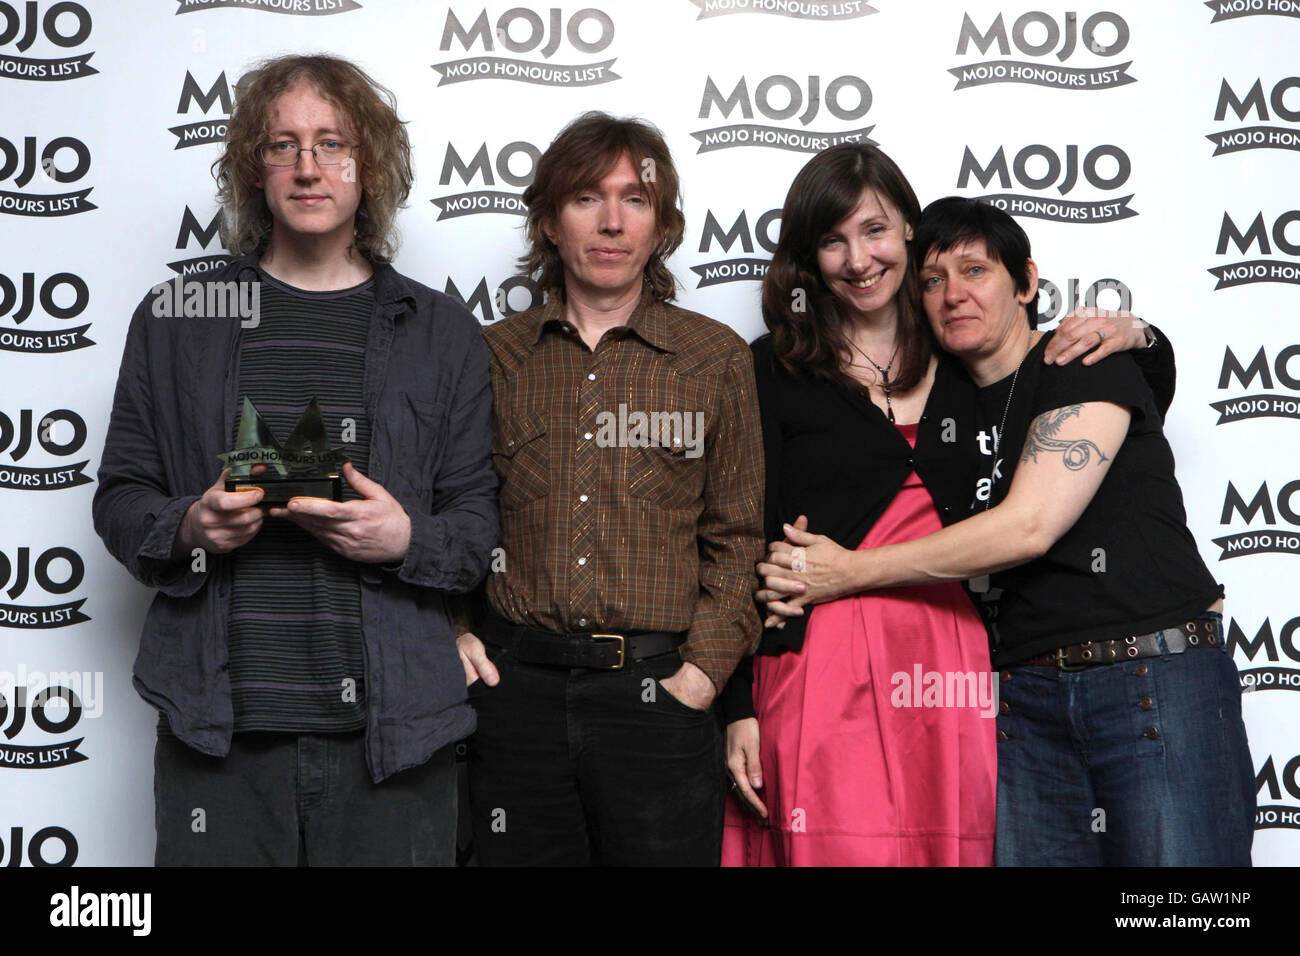 My Bloody Valentine Sammeln Sie den MOJO Classic Album Award für ihr Album "Loveless" während der Mojo Honors List Preisverleihung in der Brauerei, East London. Stockfoto